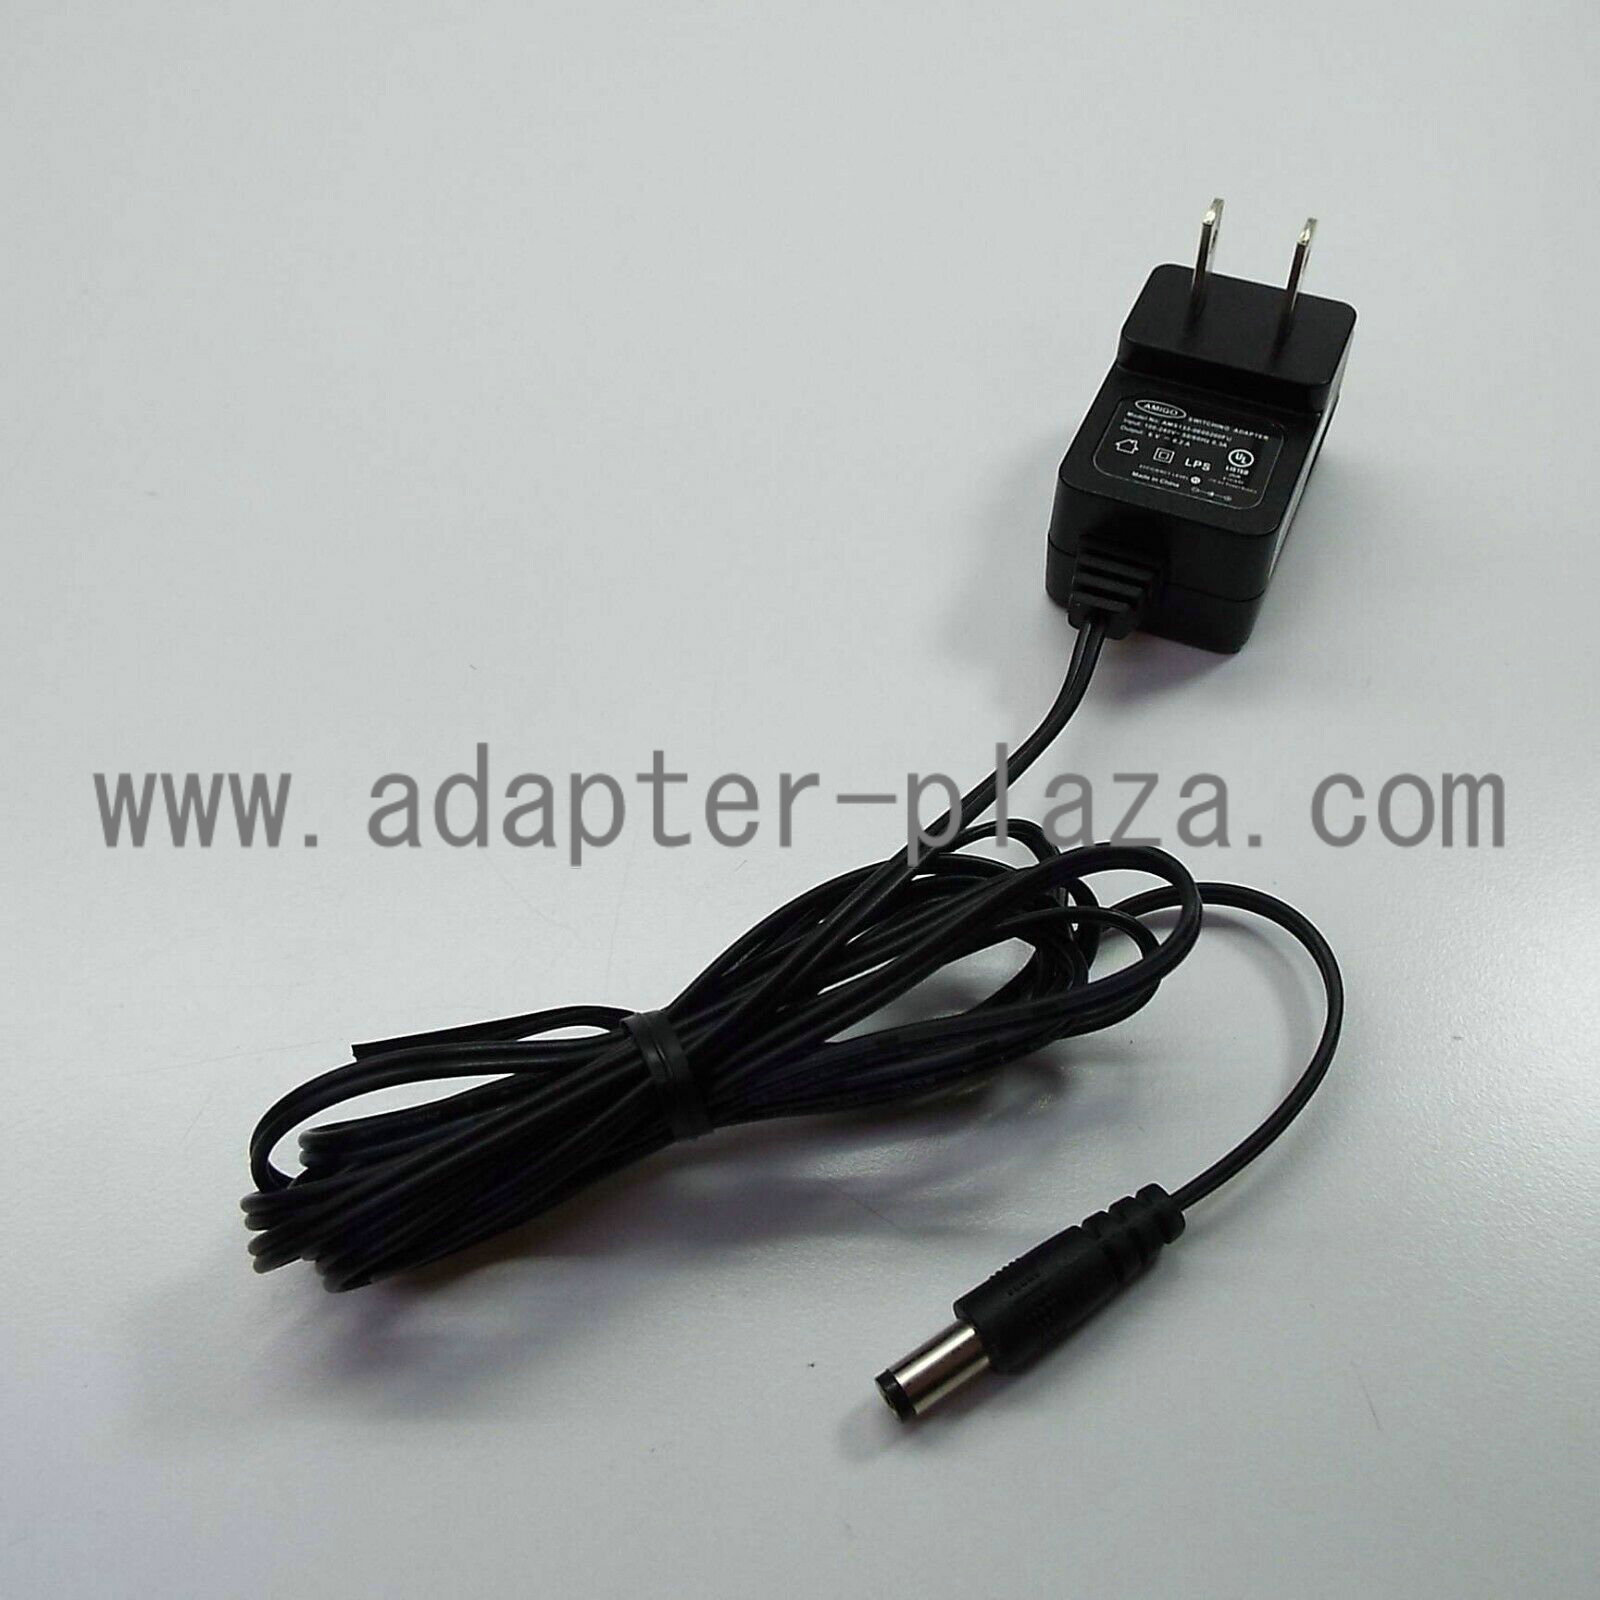 *Brand NEW* AMIGO AWS133-0600200FU J3400 6V 0.2A AC DC Adapter POWER SUPPLY